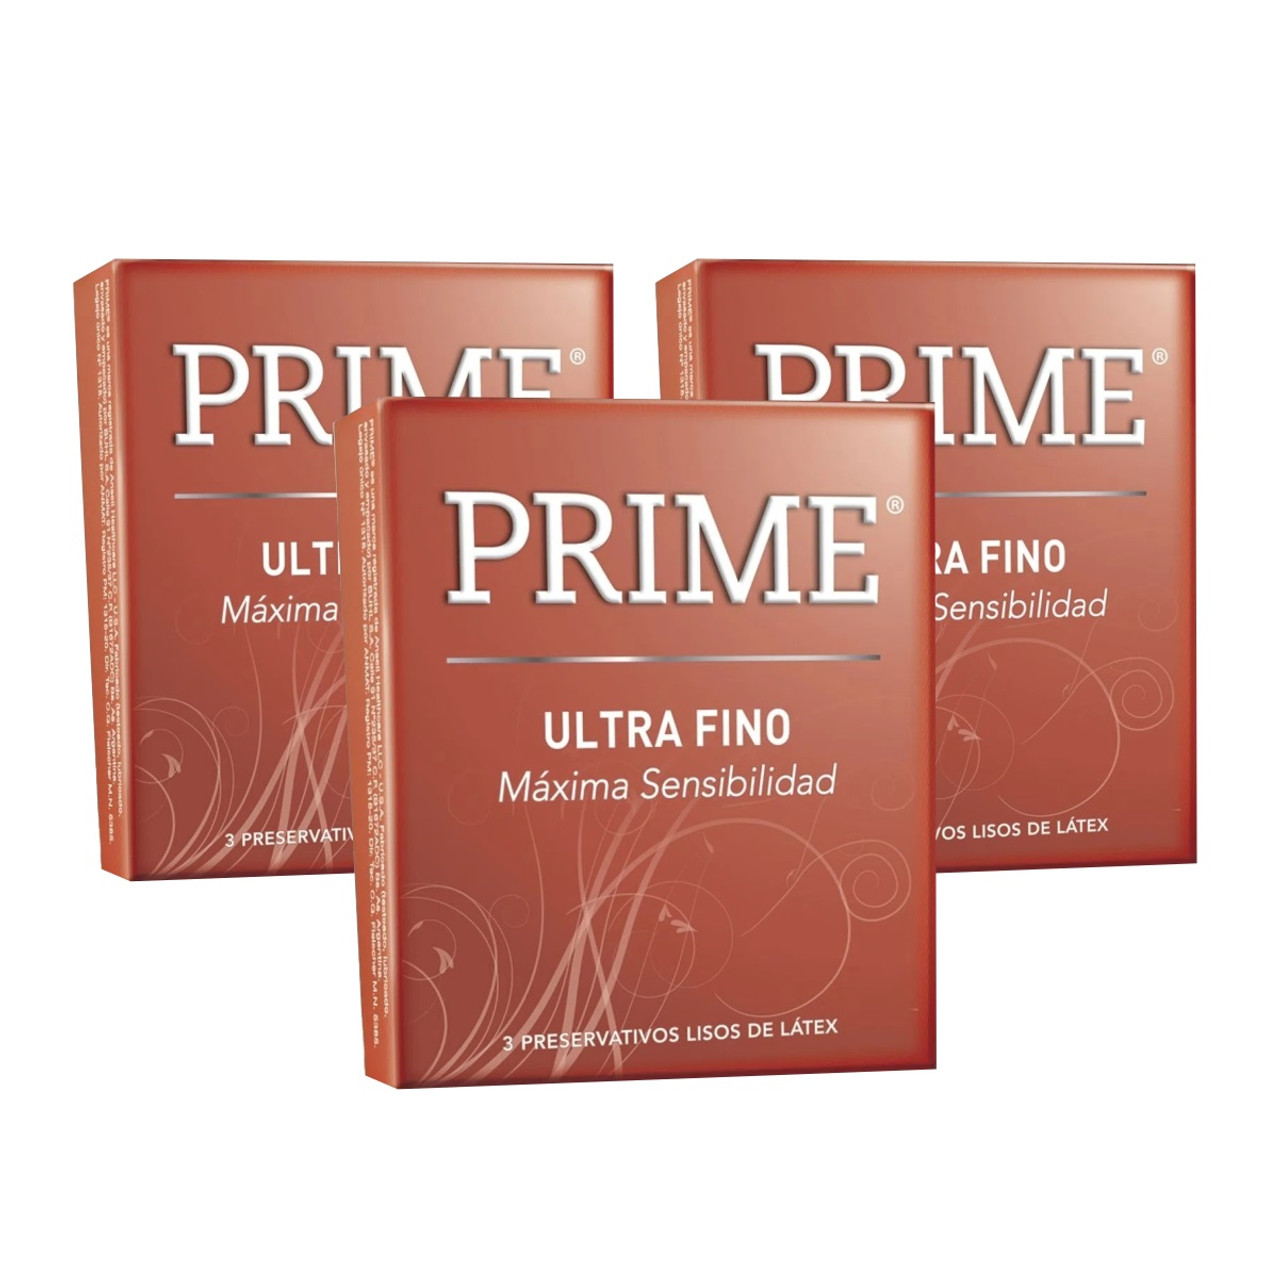 Prime Ultra Fino Preservativos Ultra Super Thin Latex Condoms, 3 boxes with  3 condoms ea (9